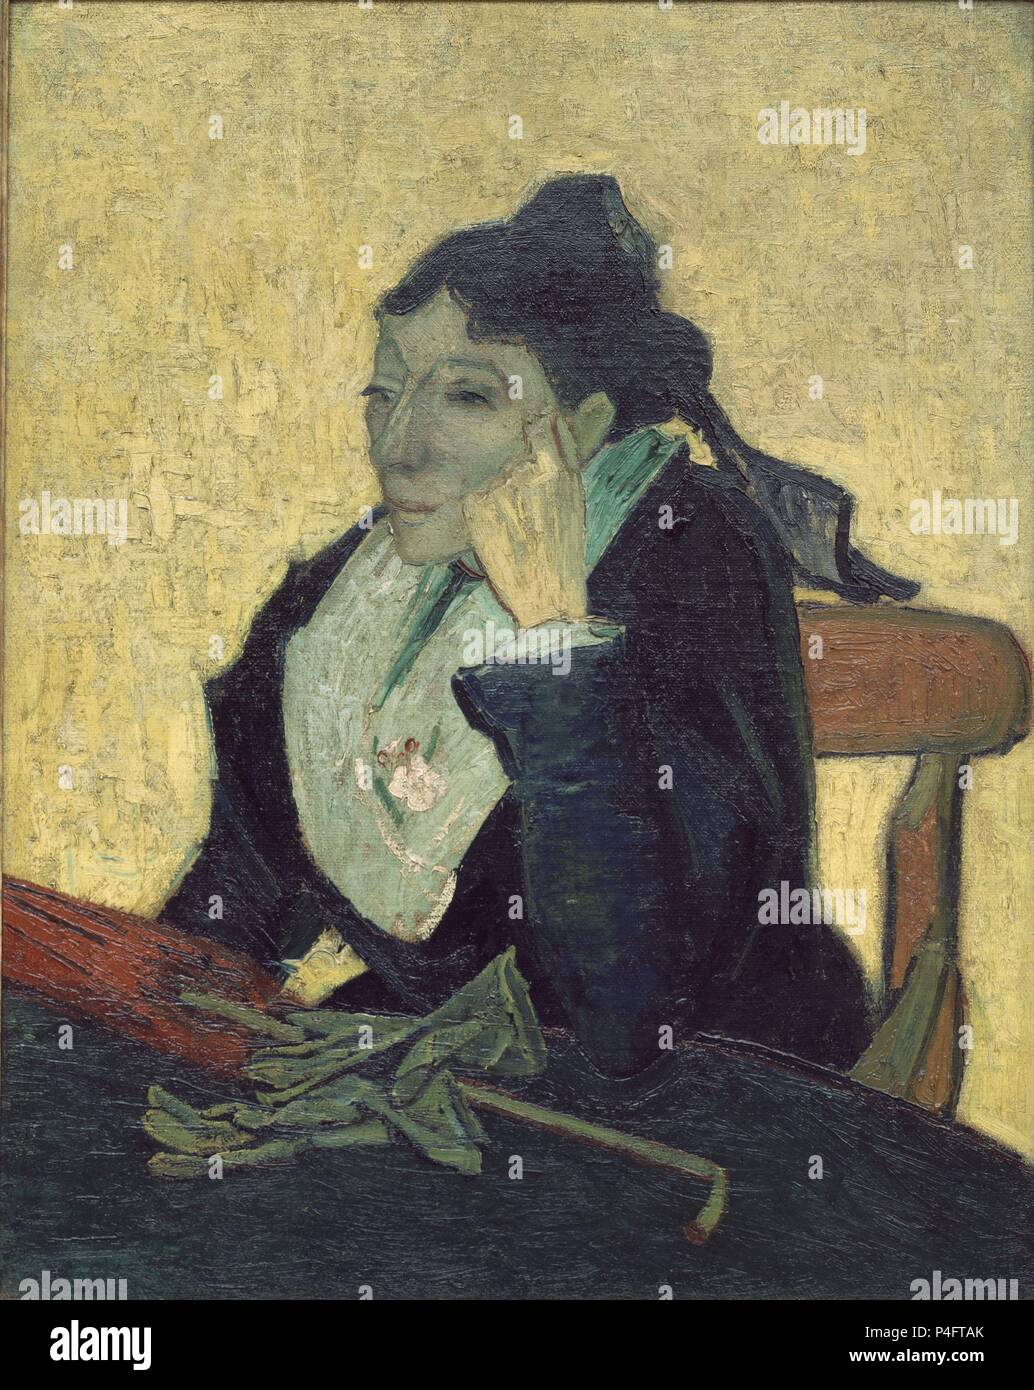 L'Arlesienne - 1888 - 93 x 74 cm - Öl auf Leinwand. Autor: Vincent van Gogh (1853-1890). Lage: Musee D'Orsay, Frankreich. Auch als: LA ARLESIANA bekannt. Stockfoto